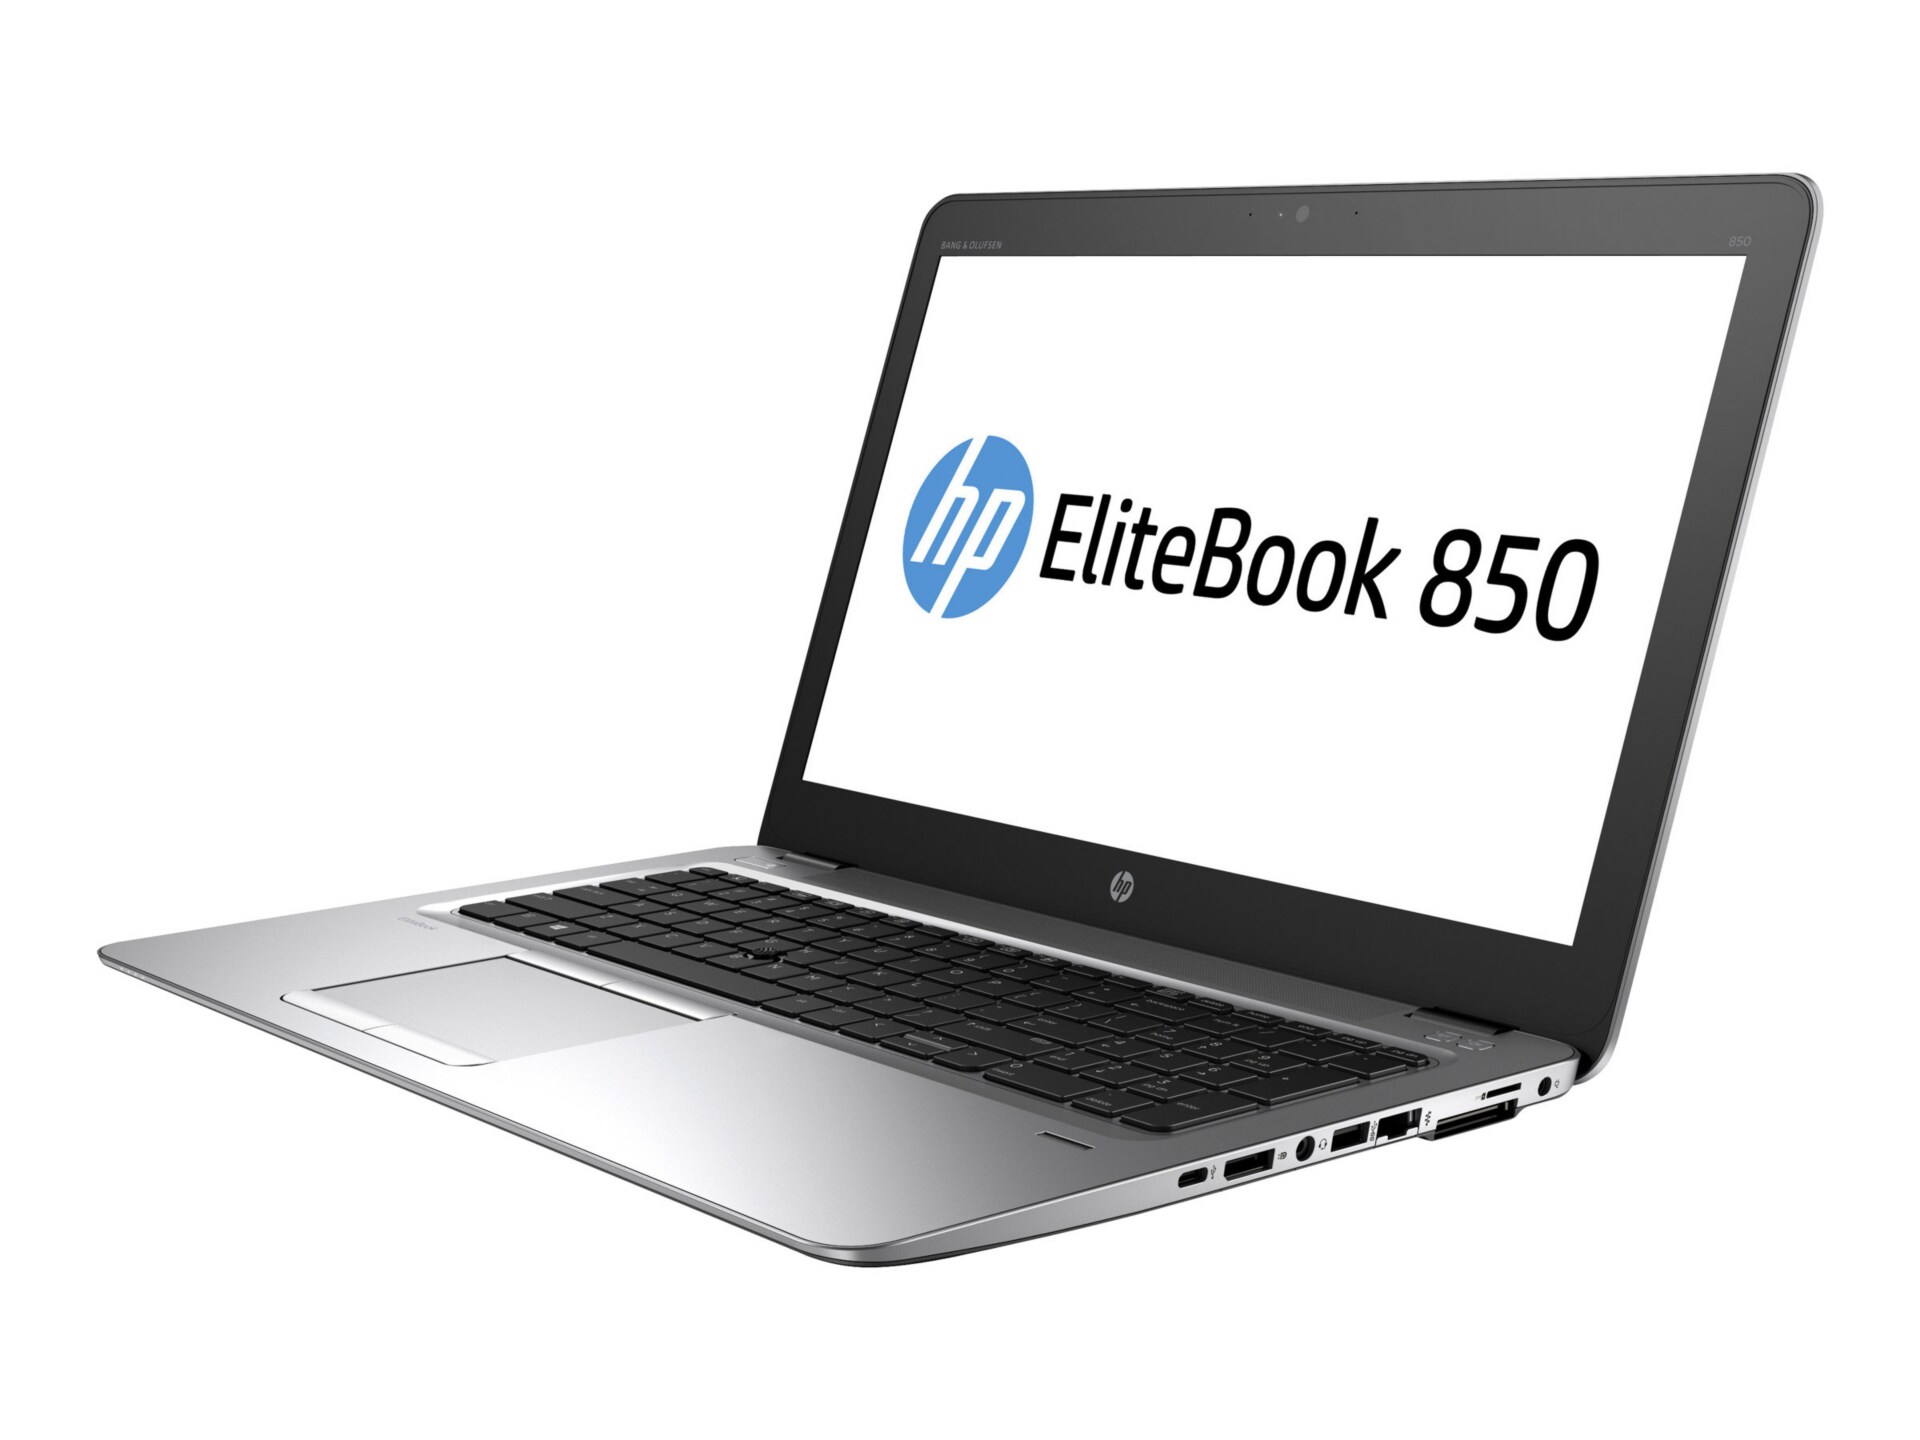 HP EliteBook 850 G3 - 15.6" - Core i5 6300U - 4 GB RAM - 256 GB SSD - US